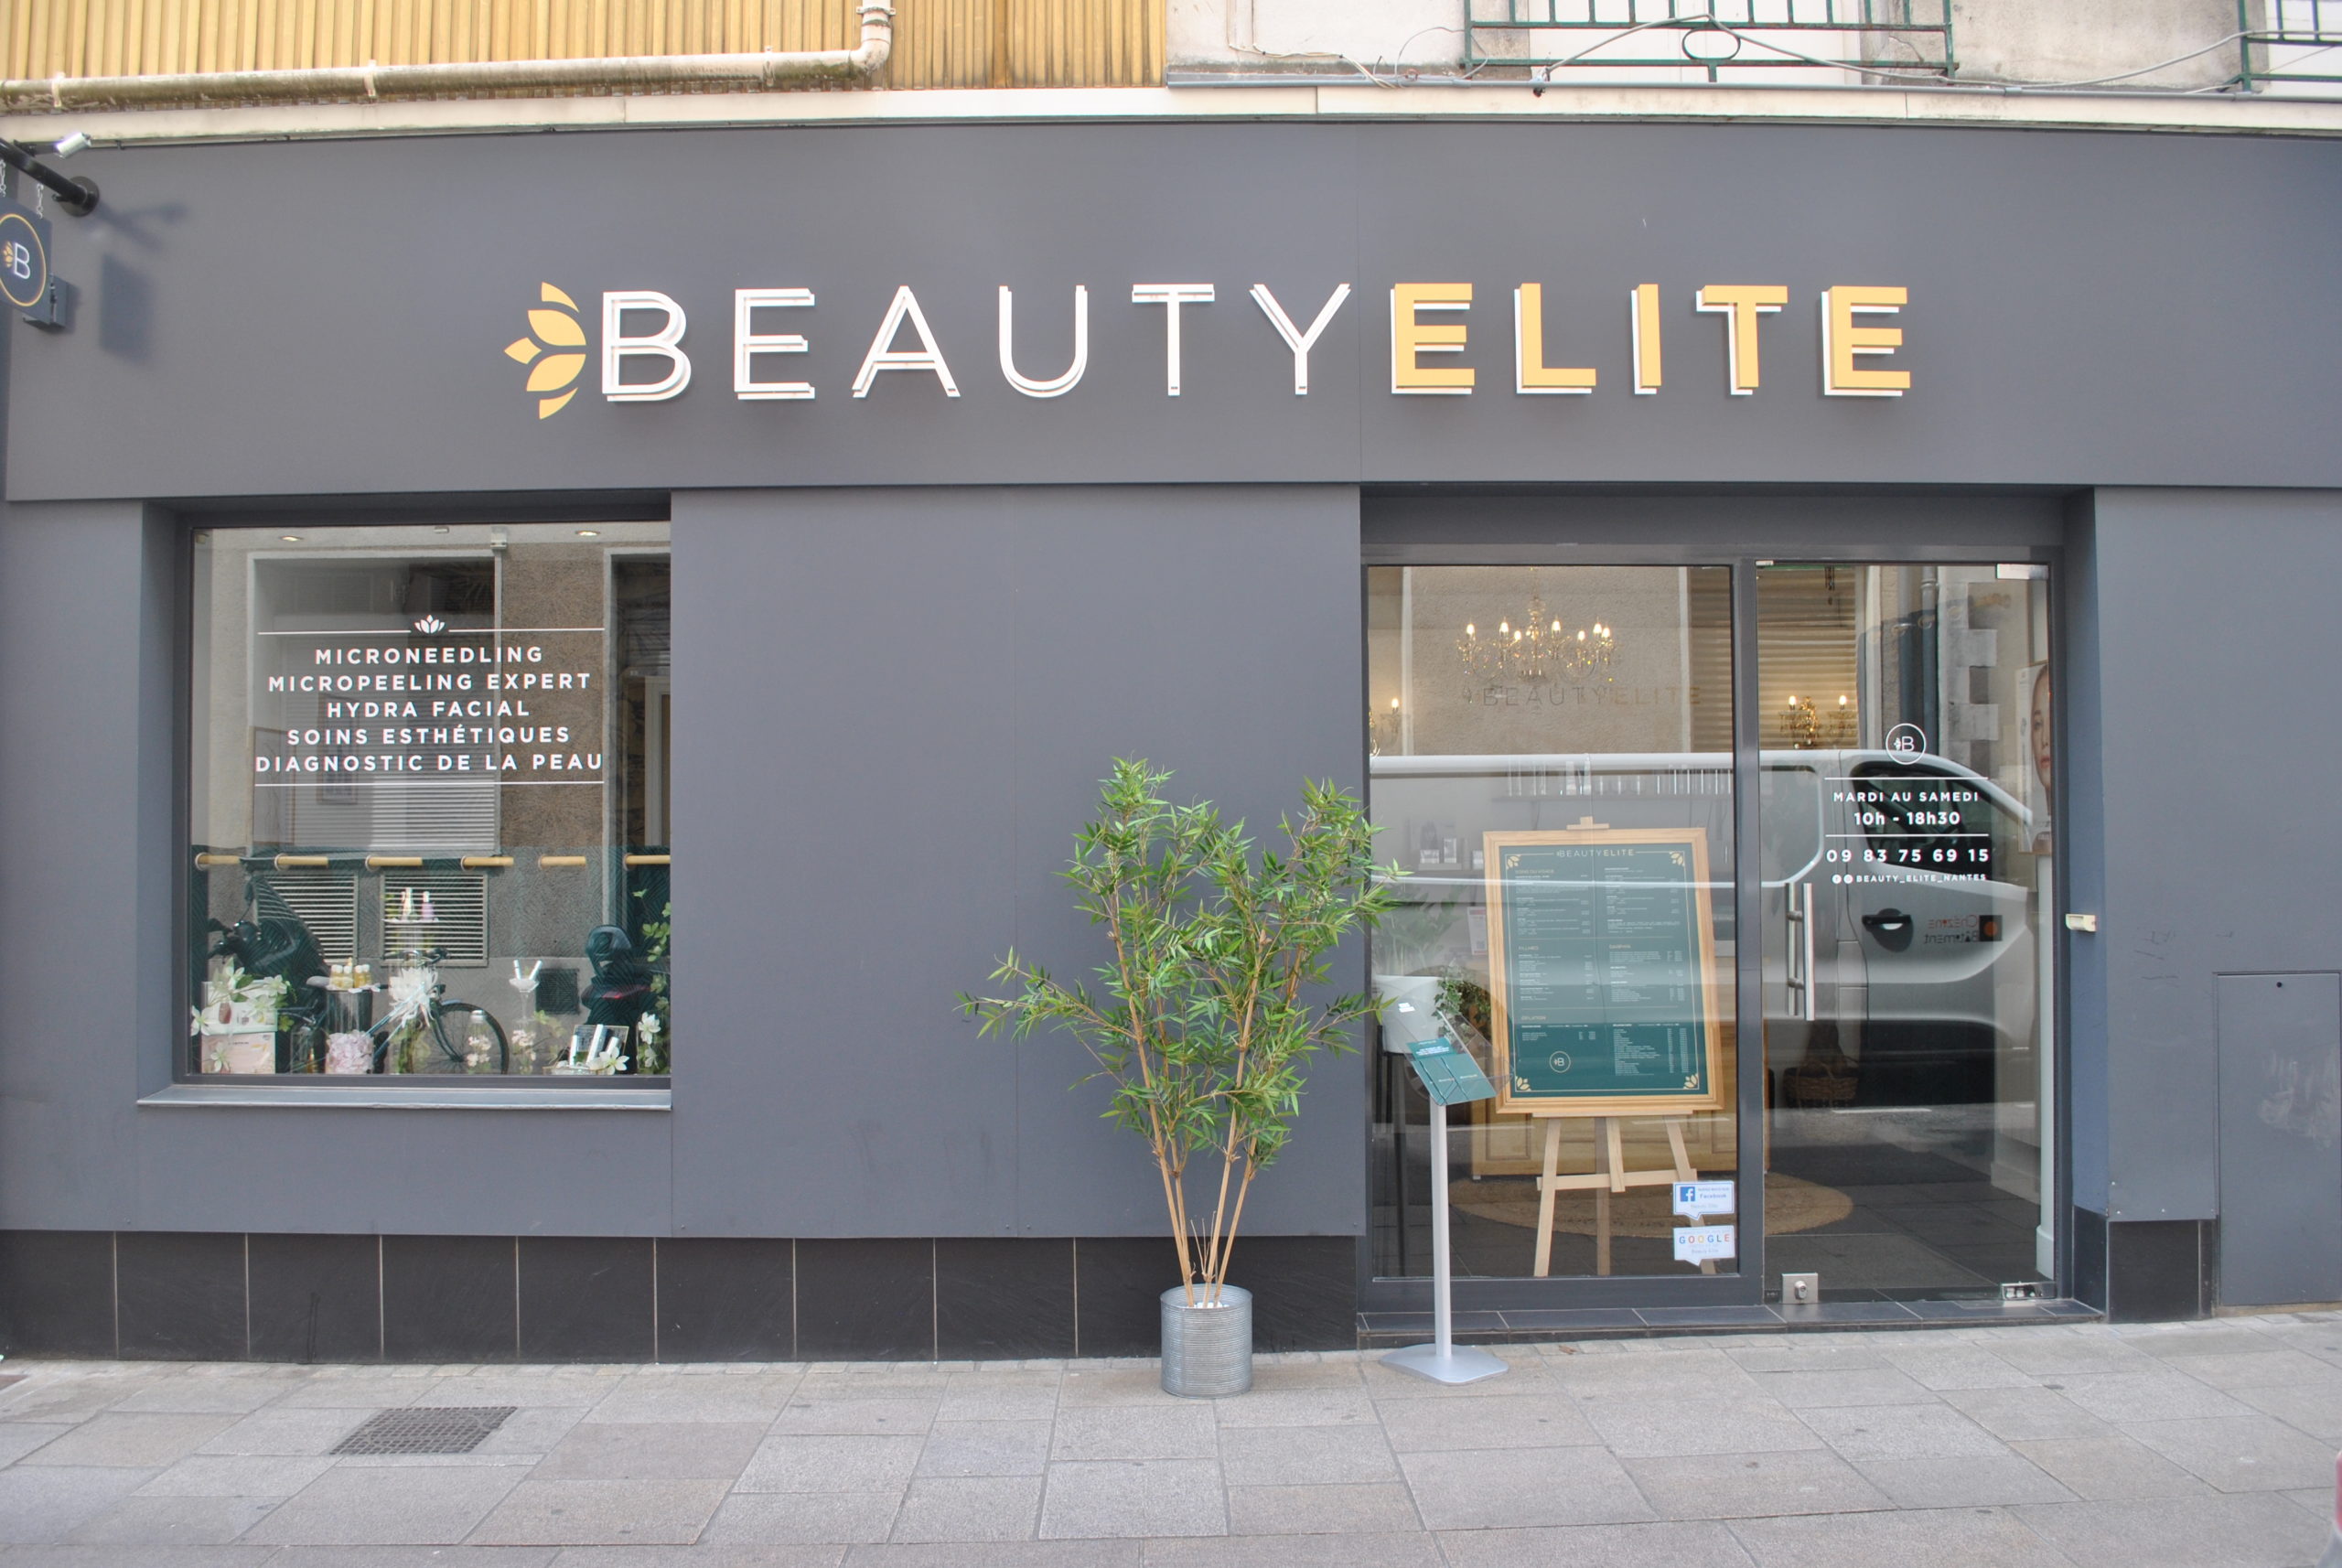 Beauty Elite à Nantes